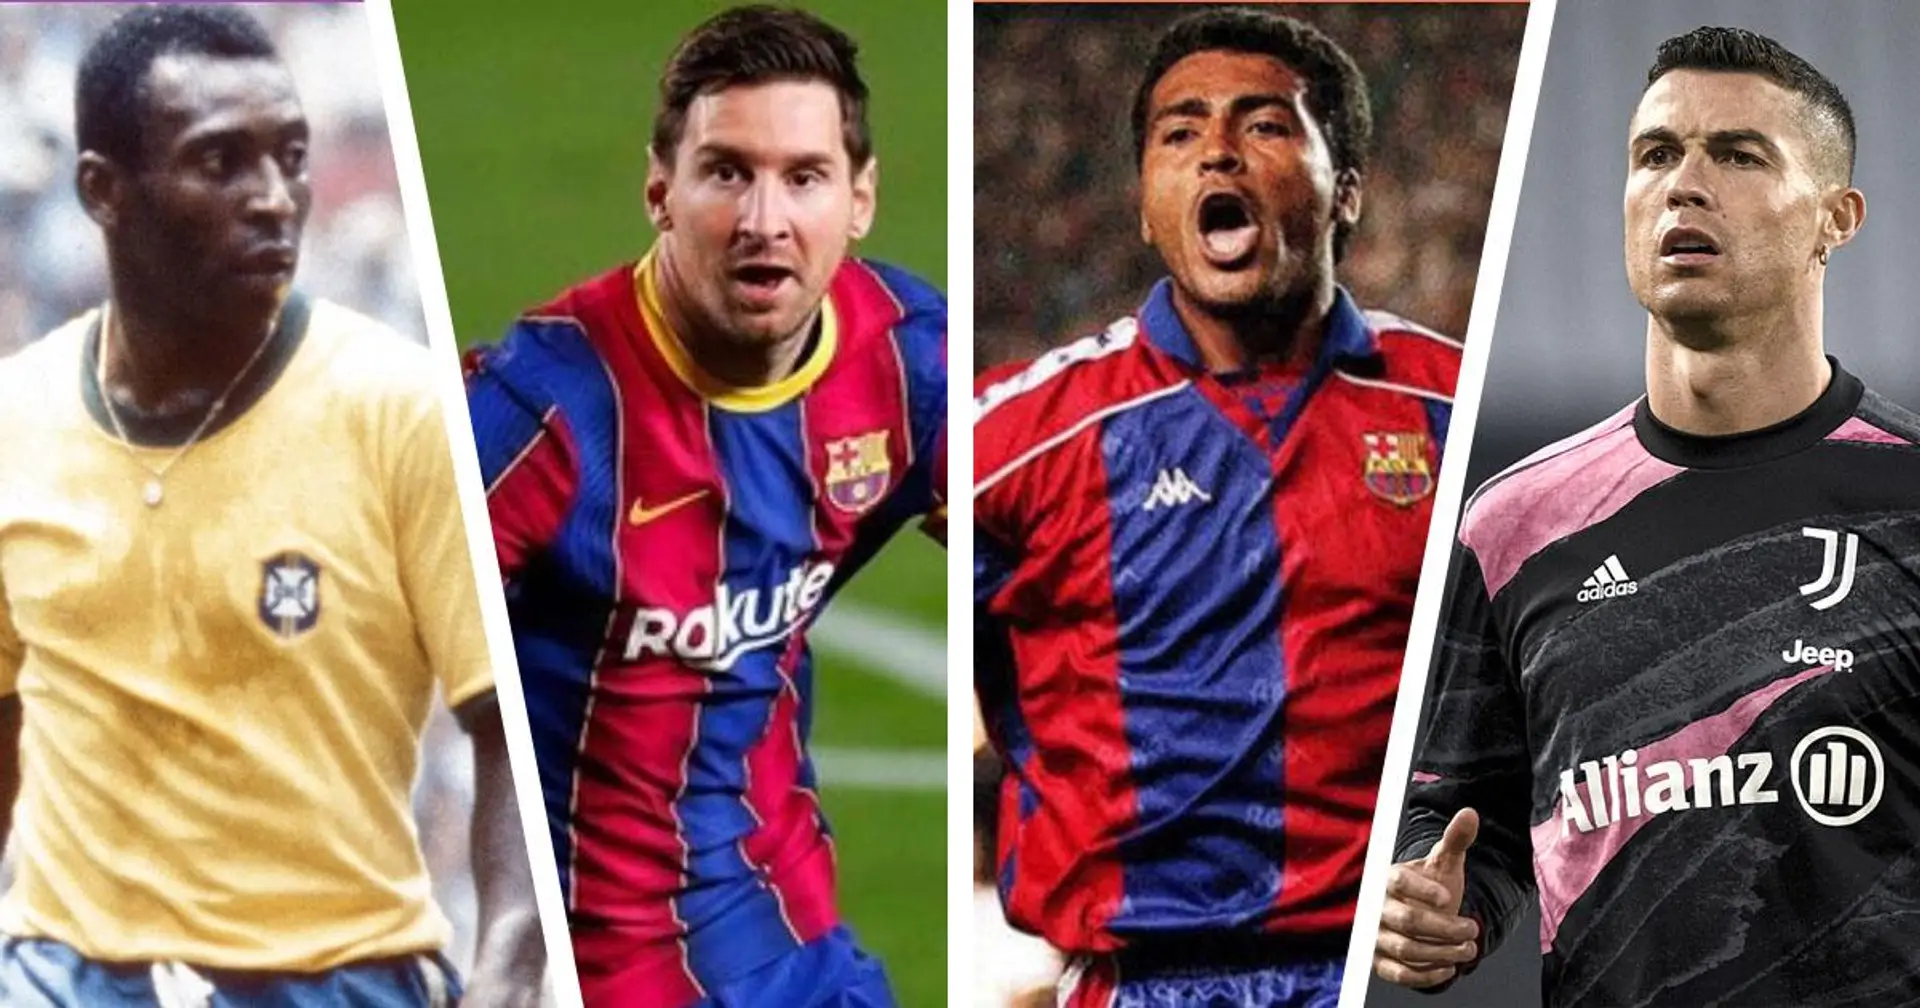 Messi dépasse Romario en tant que joueur avec le 4ème plus grand nombre de buts de l'histoire, encore loin de la 1ère place